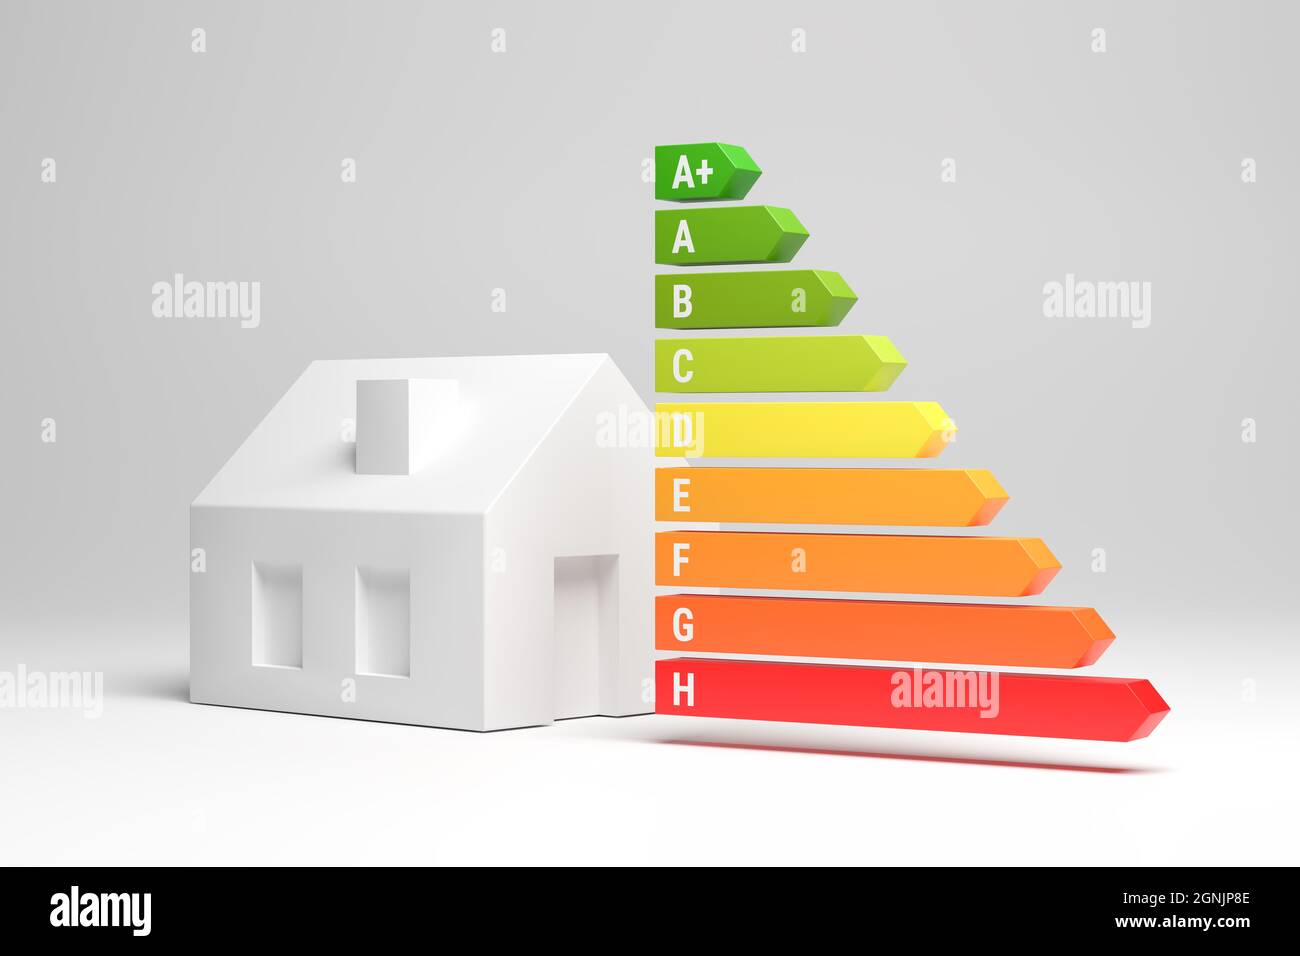 Etiquetas energéticas para casas en Alemania (Clase de eficiencia energética A+ a H). Una casa modelo junto a las flechas de la etiqueta energética. Foto de stock